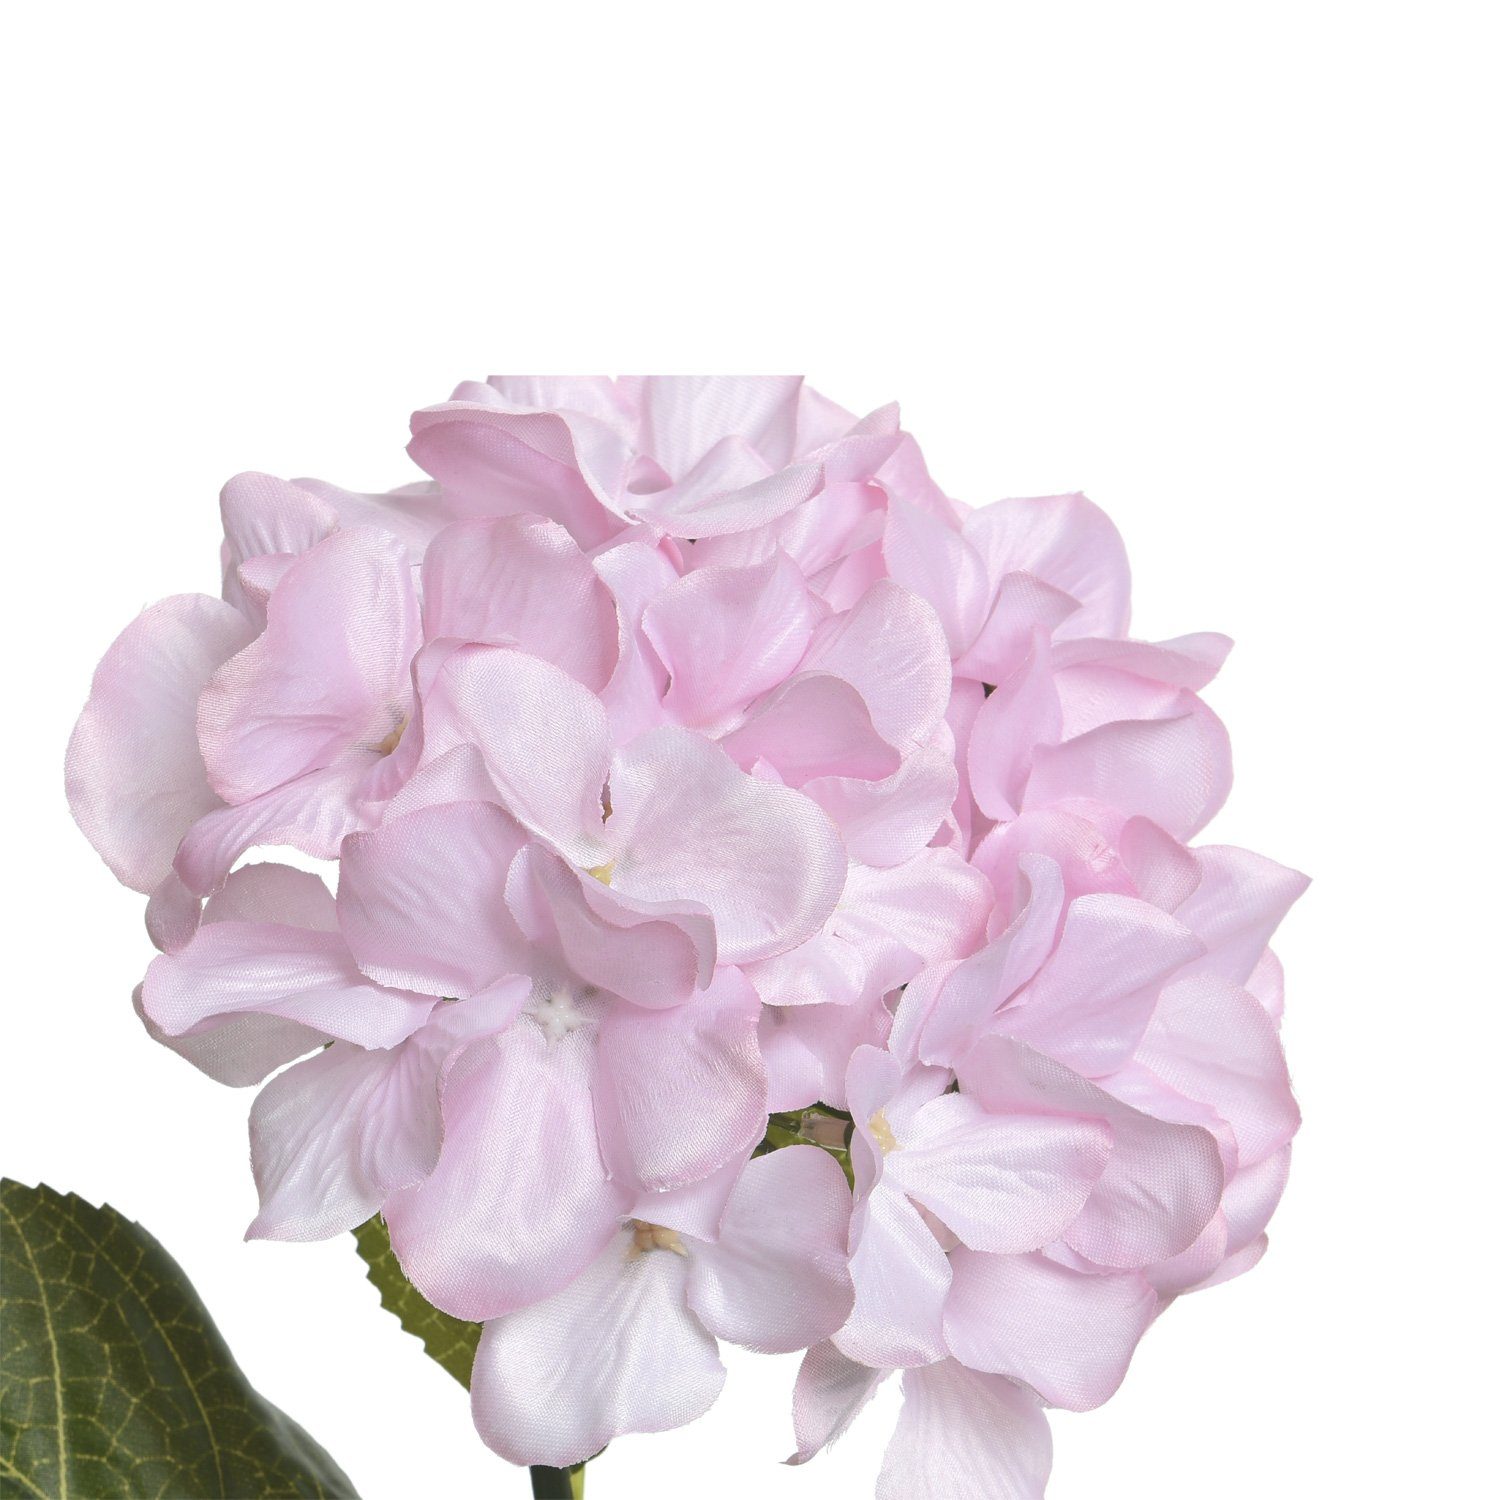 am H: Dekoblume 66 Stiel Kunstblume künstliche Hortensie 66cm, Stielblume MARELIDA, Kunstblume cm Höhe